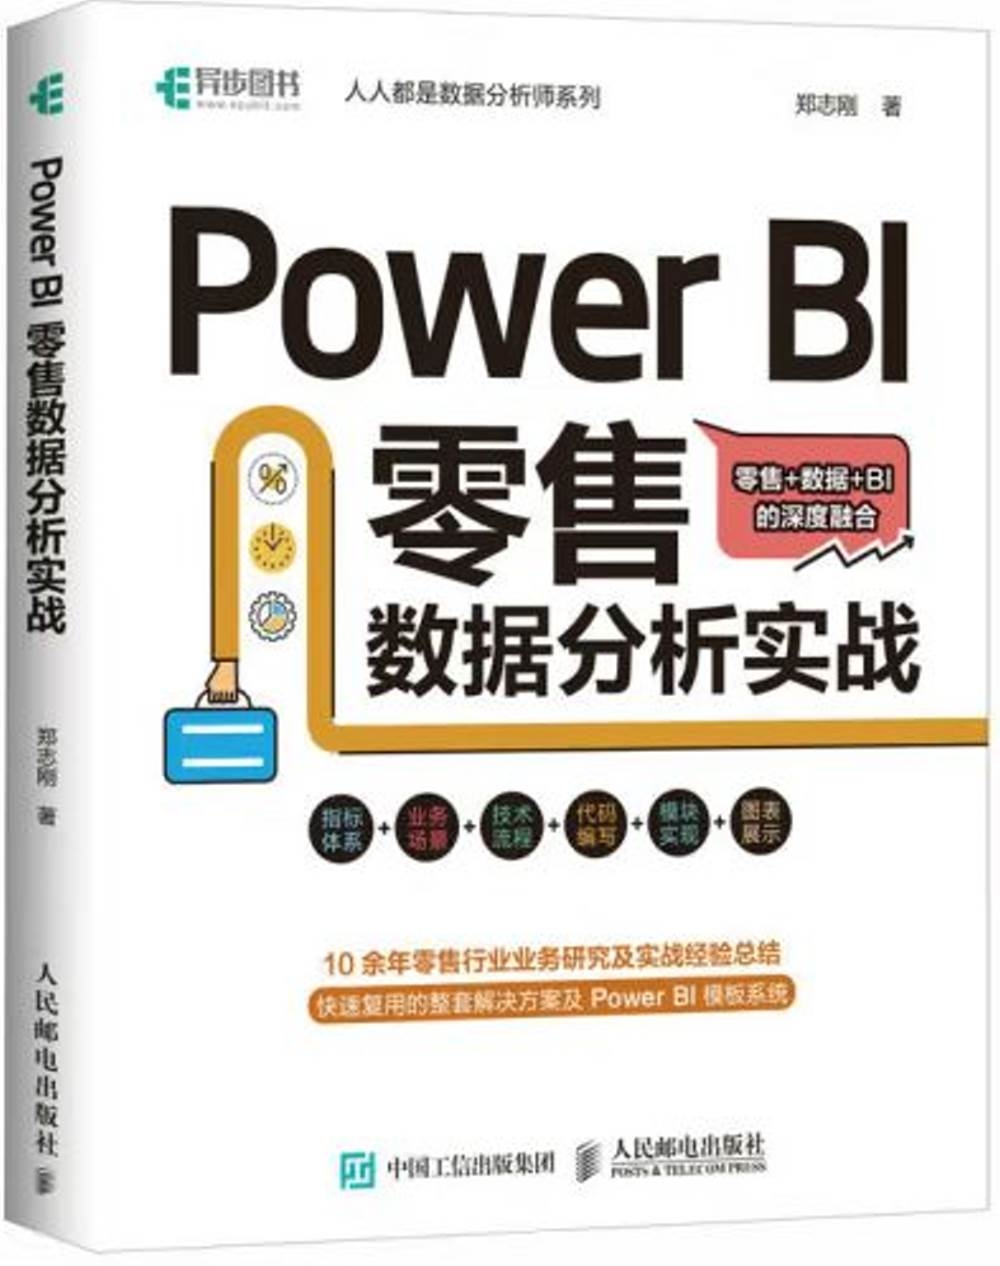 Power BI 零售數據分析實戰